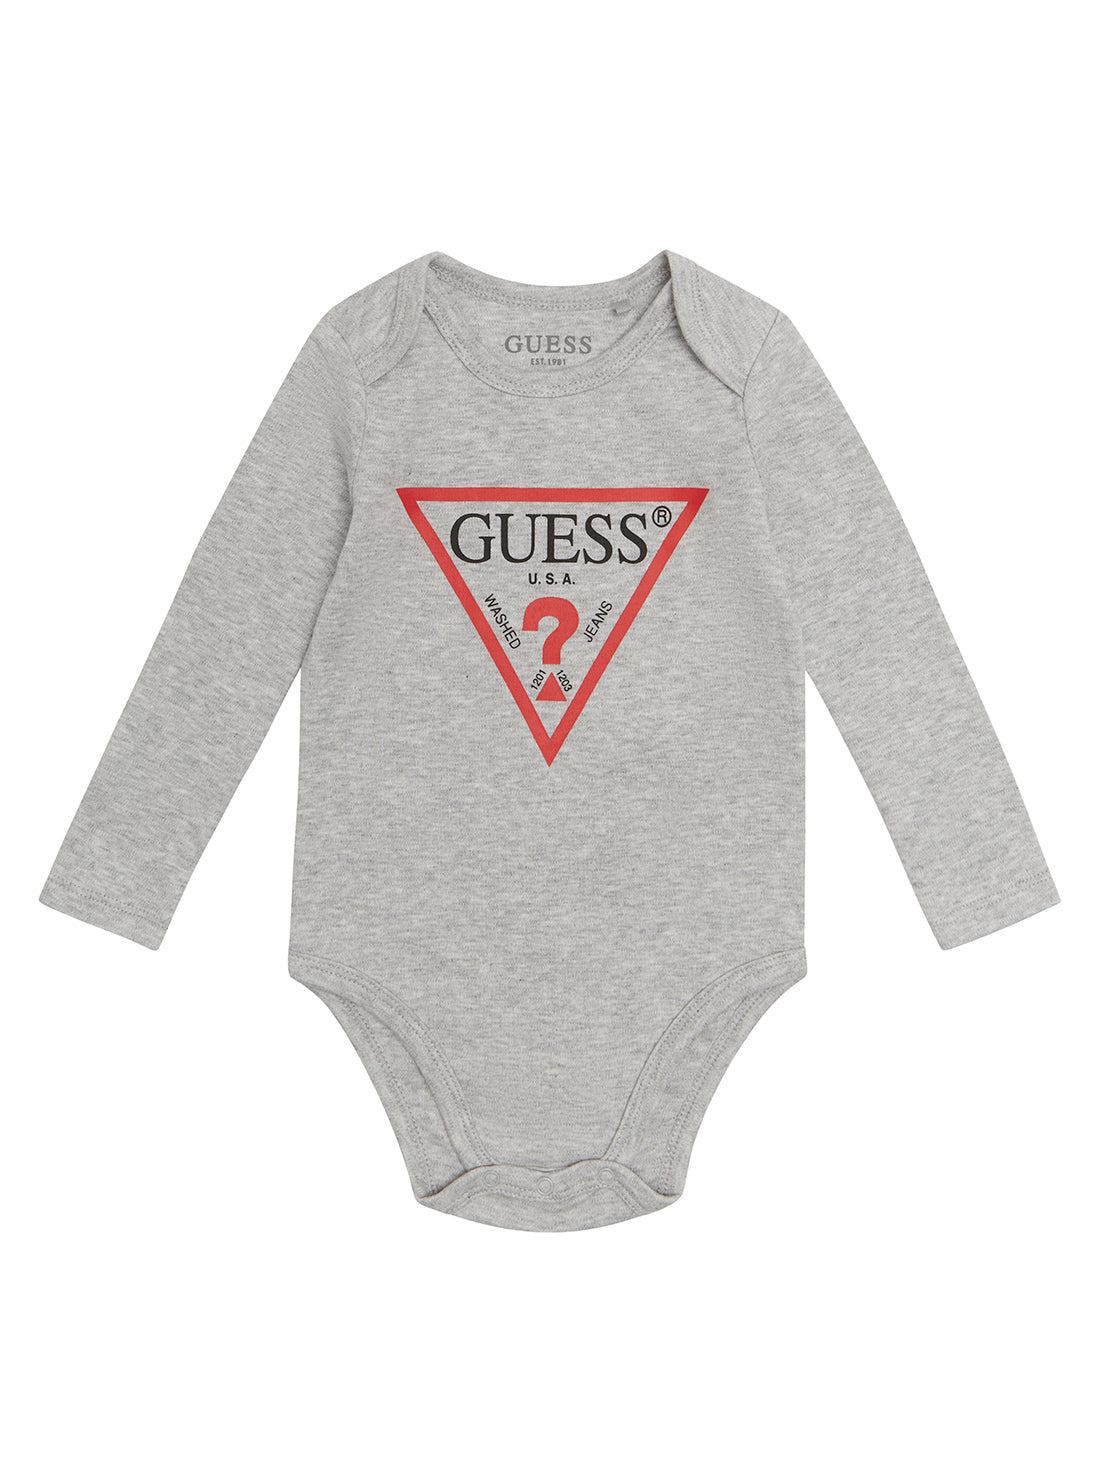 GUESS Baby Boy Grey Logo Bodysuit Top (0-12m) H2YW09K8ML0 Front View